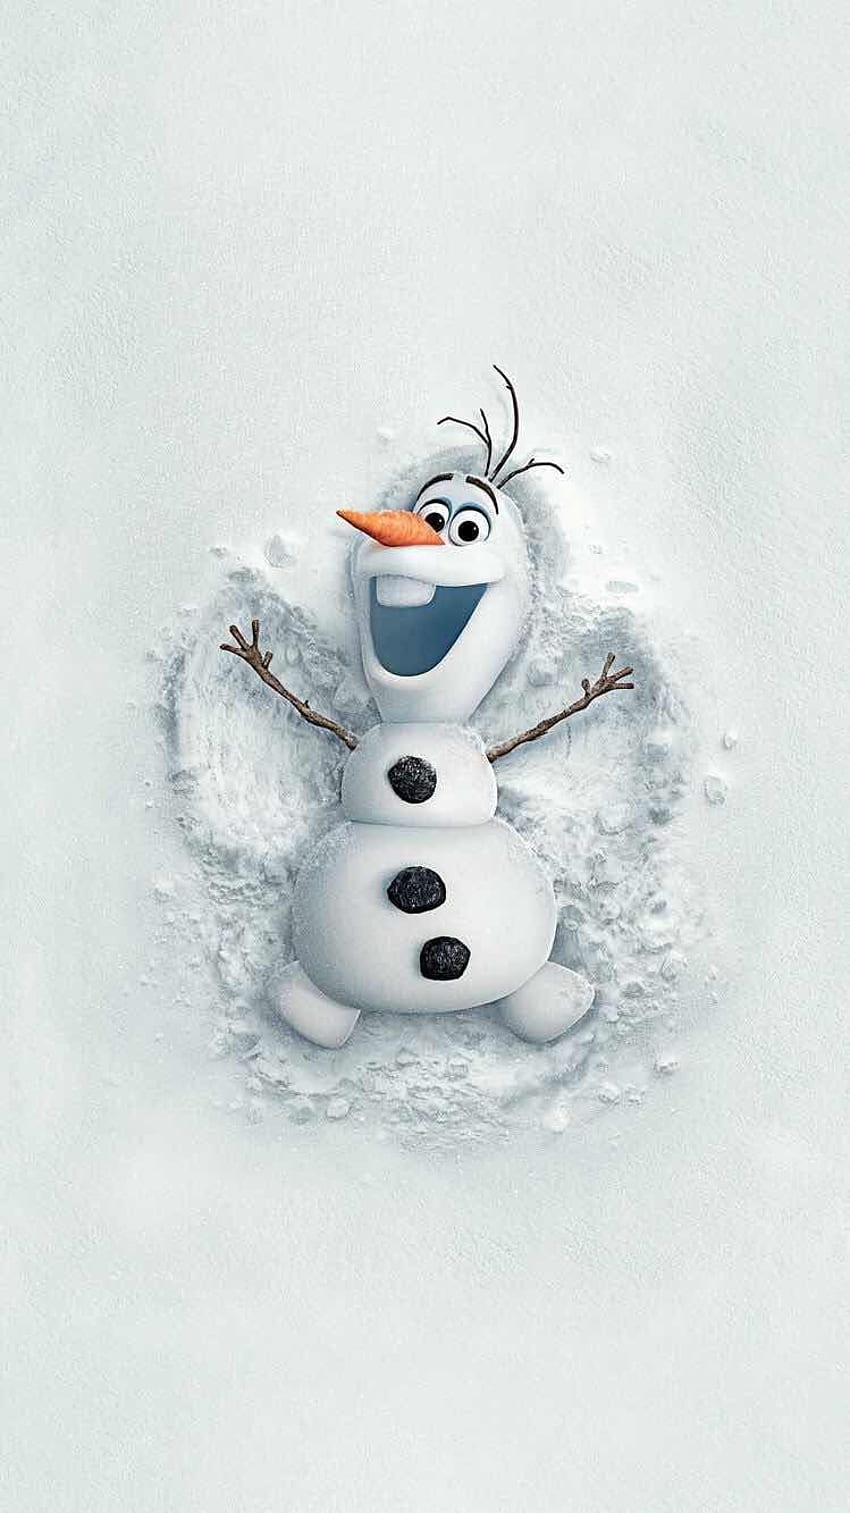 Fondasi untuk iPhone dan Android: Olaf Frozen untuk iPhone dan Android. Telepon Natal, Kartun iPhone, Disney wallpaper ponsel HD